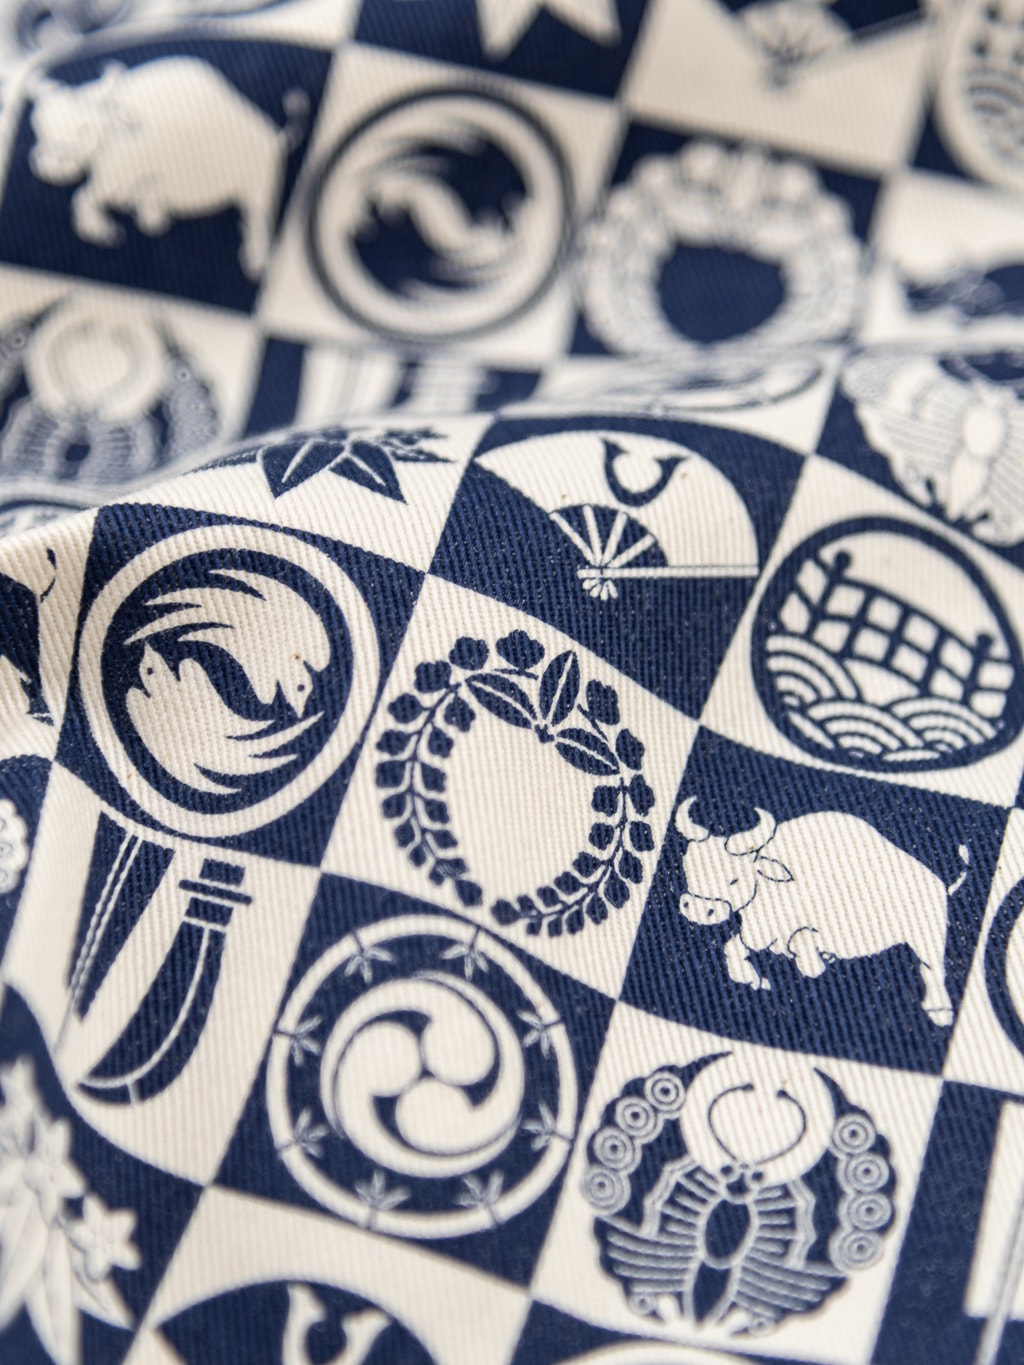 Samurai Jeans Ushiwaka Kamon Shirt cotton twill fabric